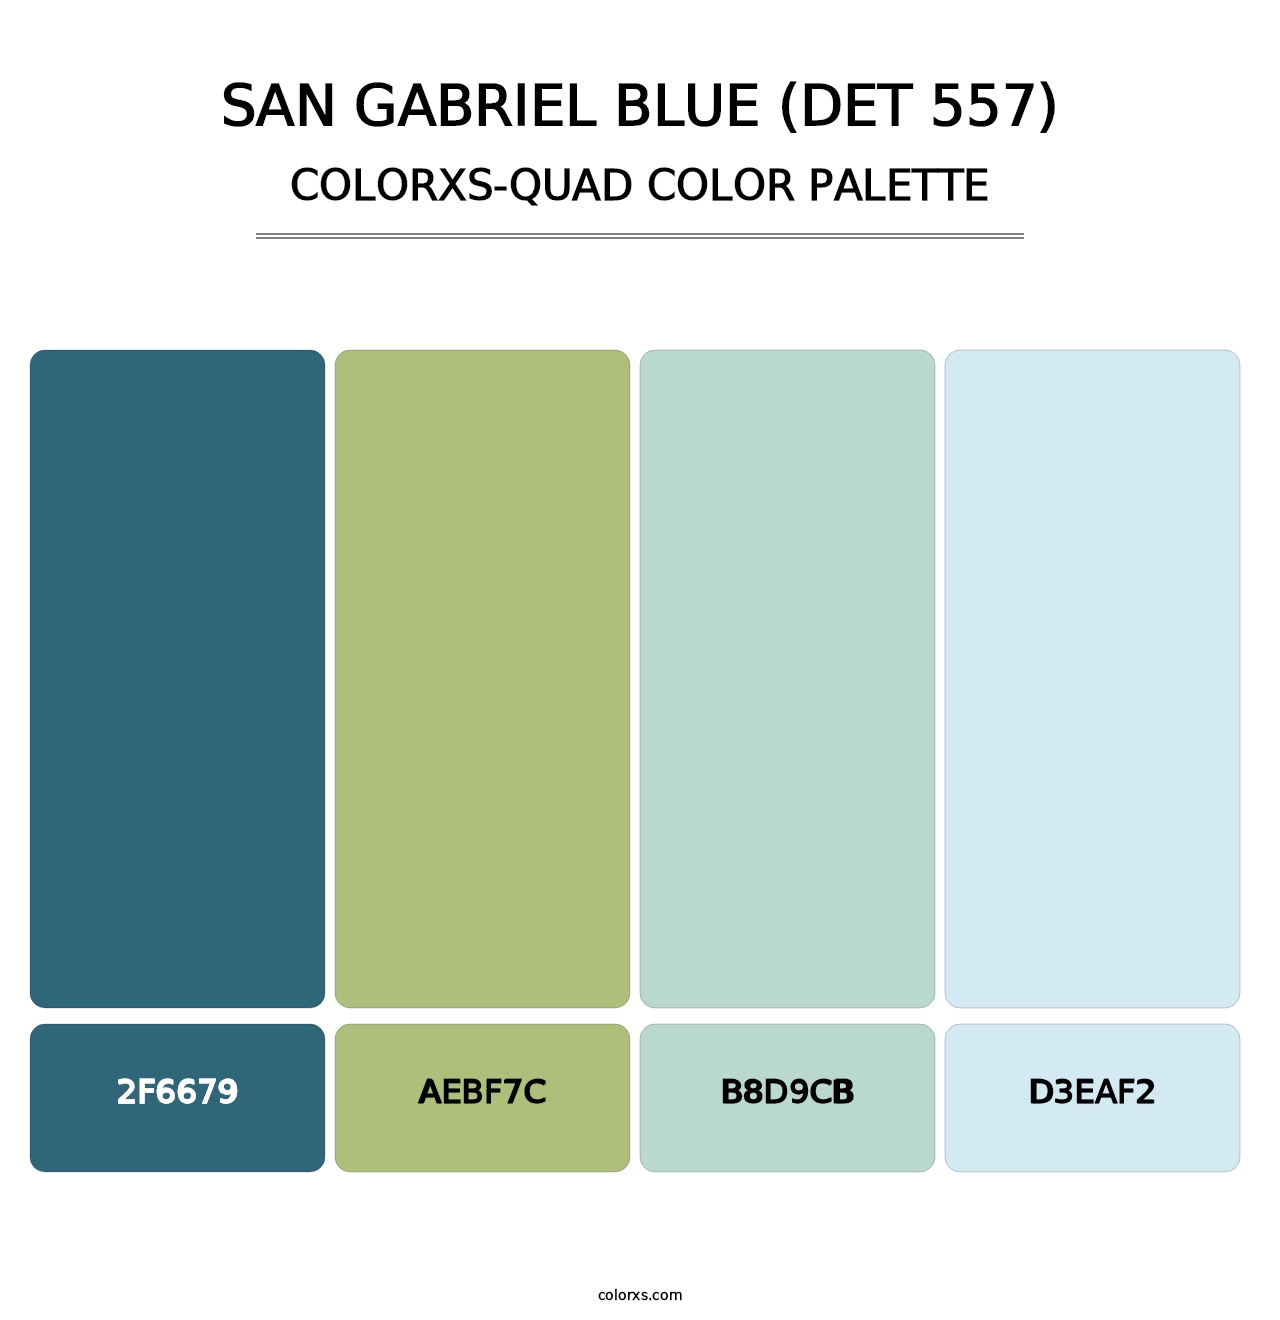 San Gabriel Blue (DET 557) - Colorxs Quad Palette